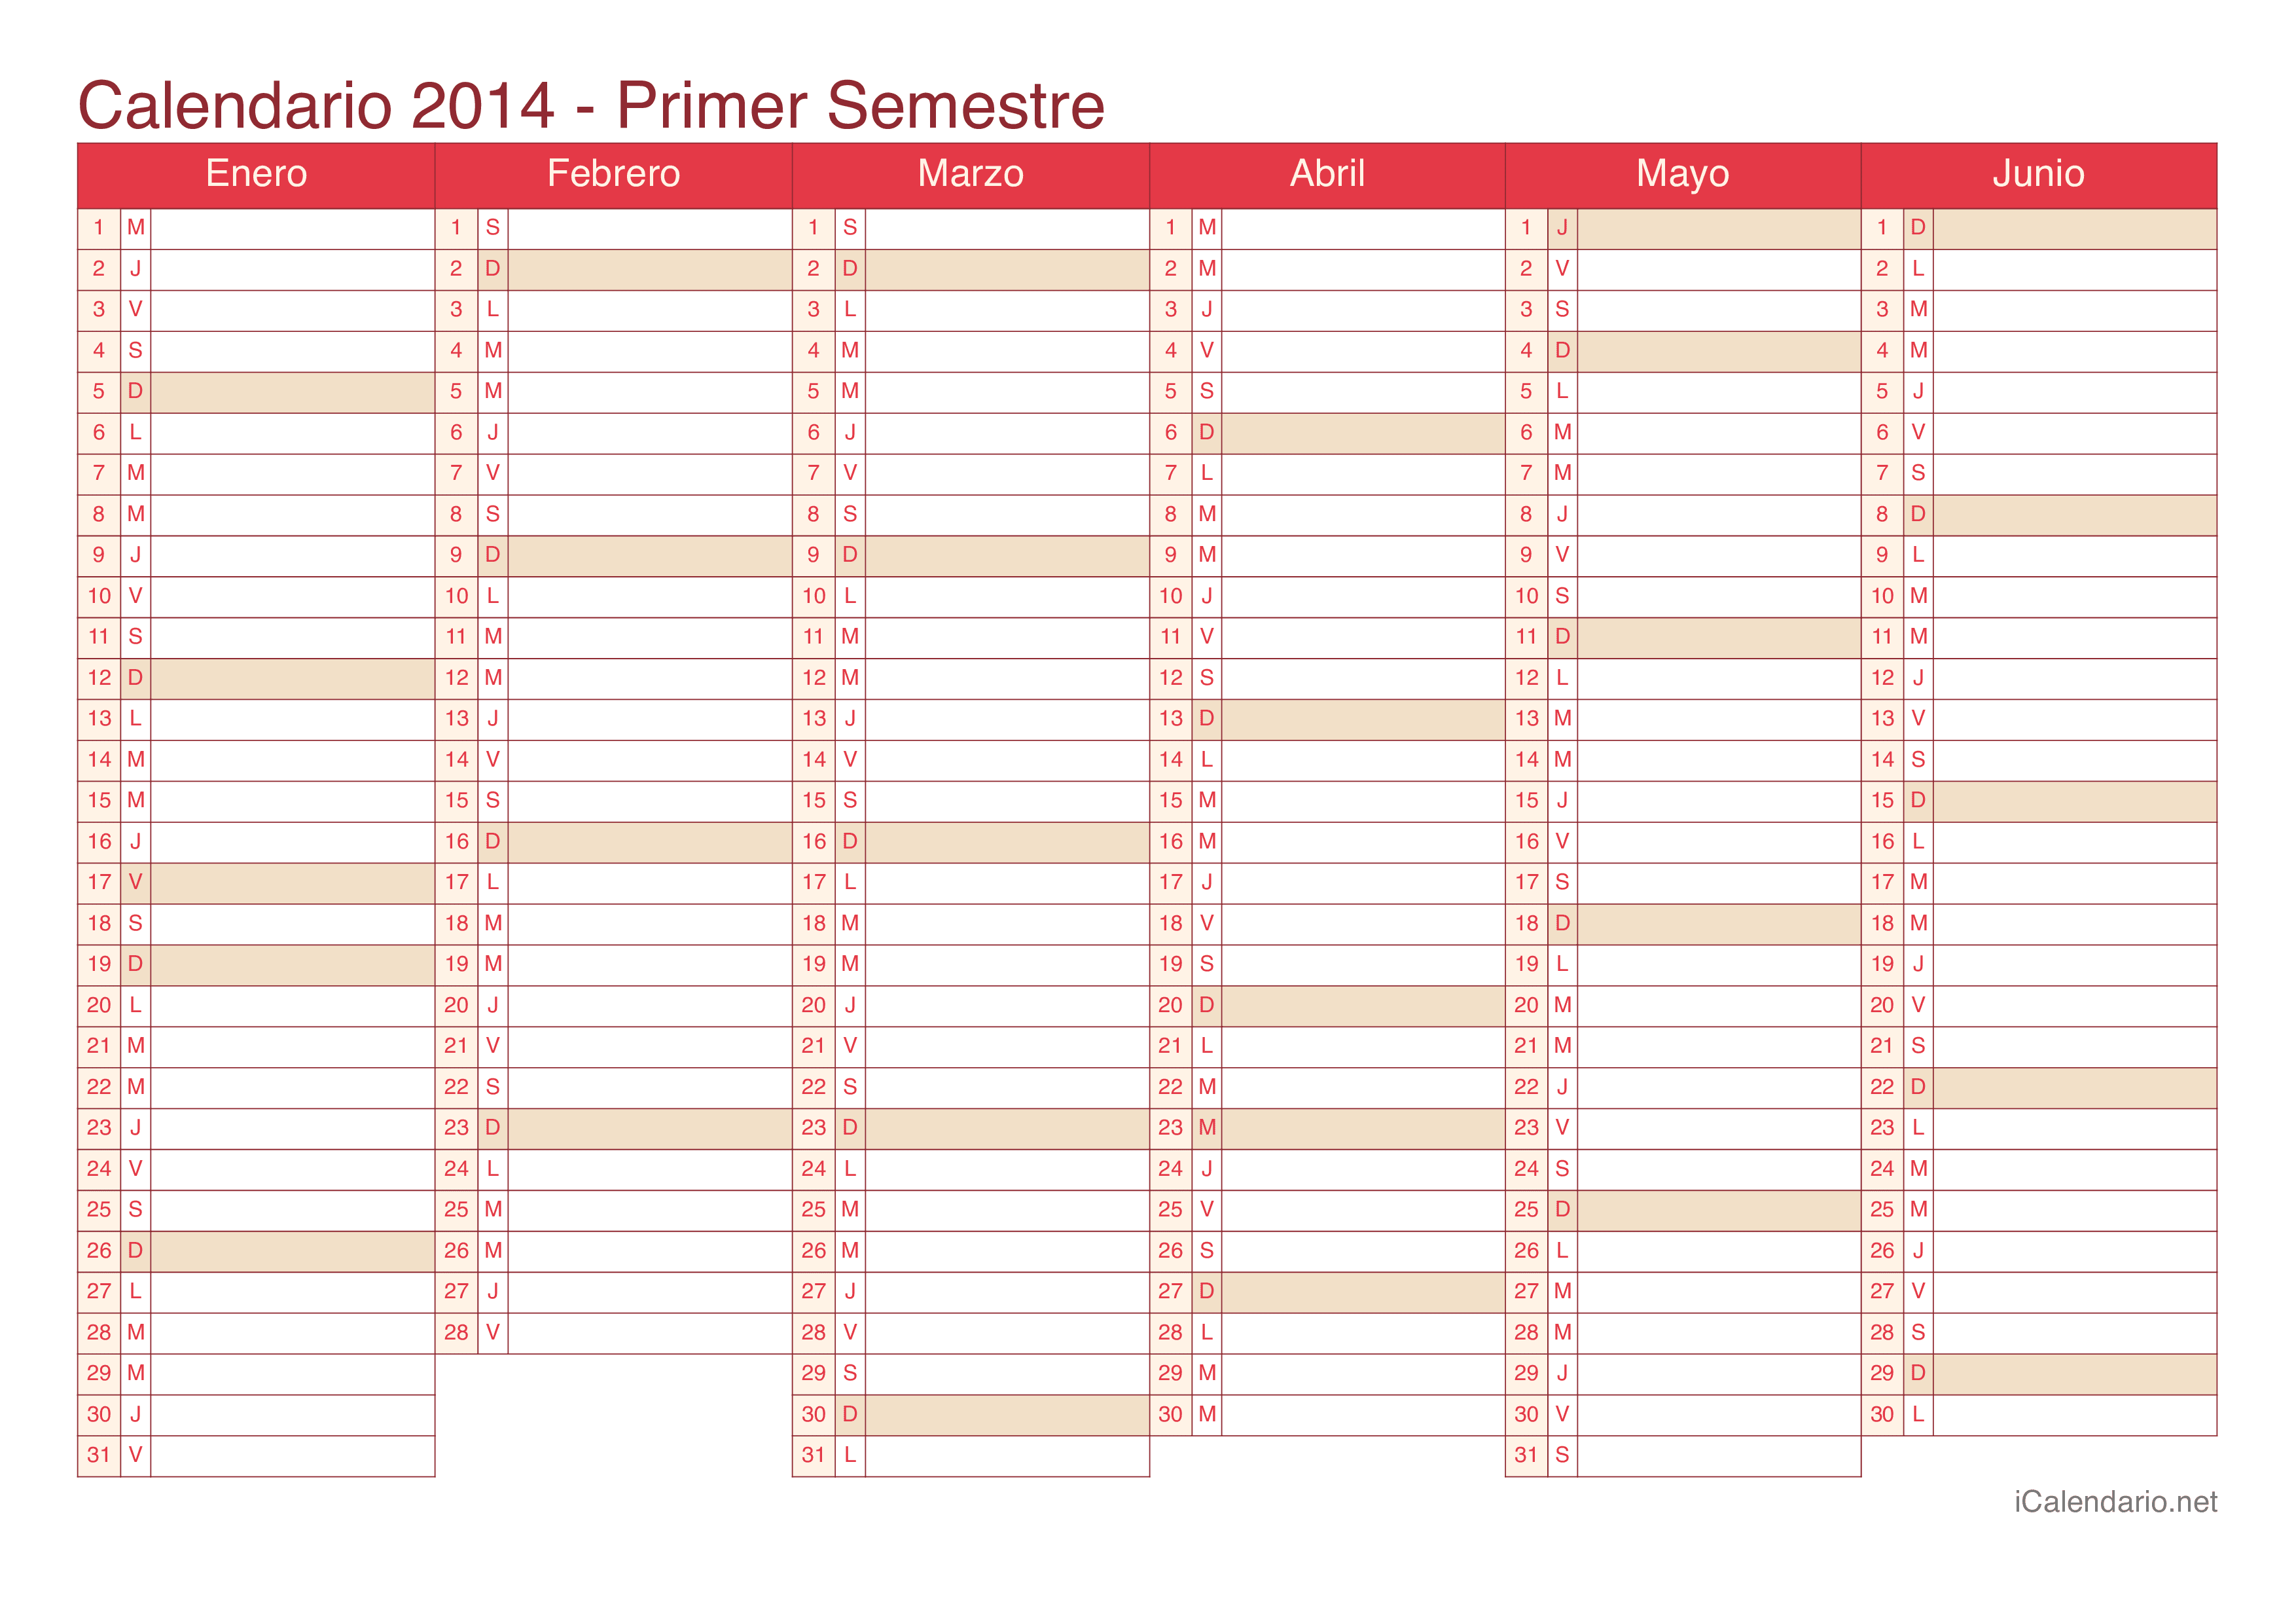 Calendario por semestre 2014 - Cherry